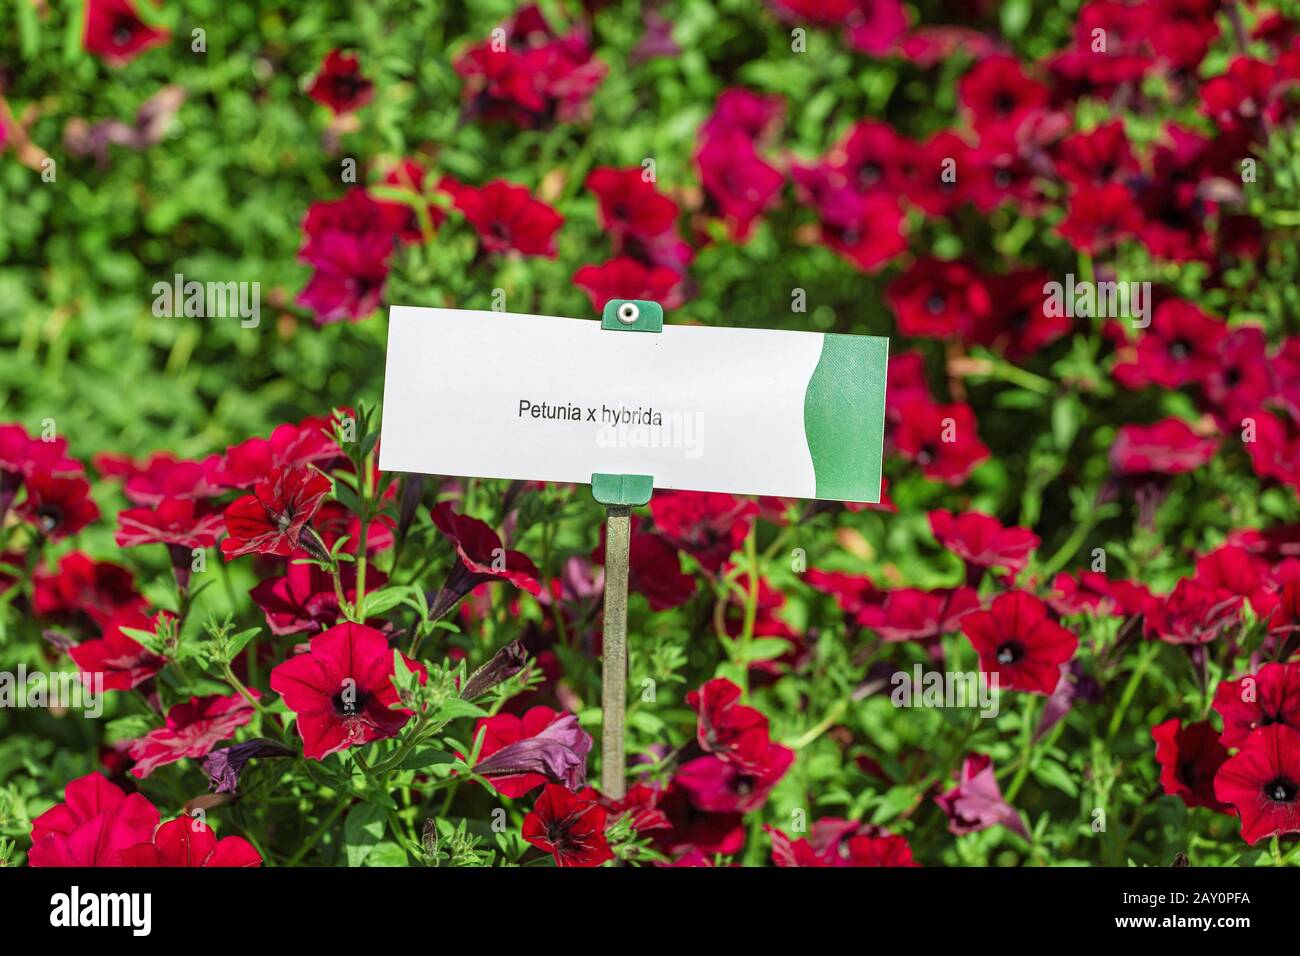 Cama de flores de petunia roja en el jardín botánico Foto de stock